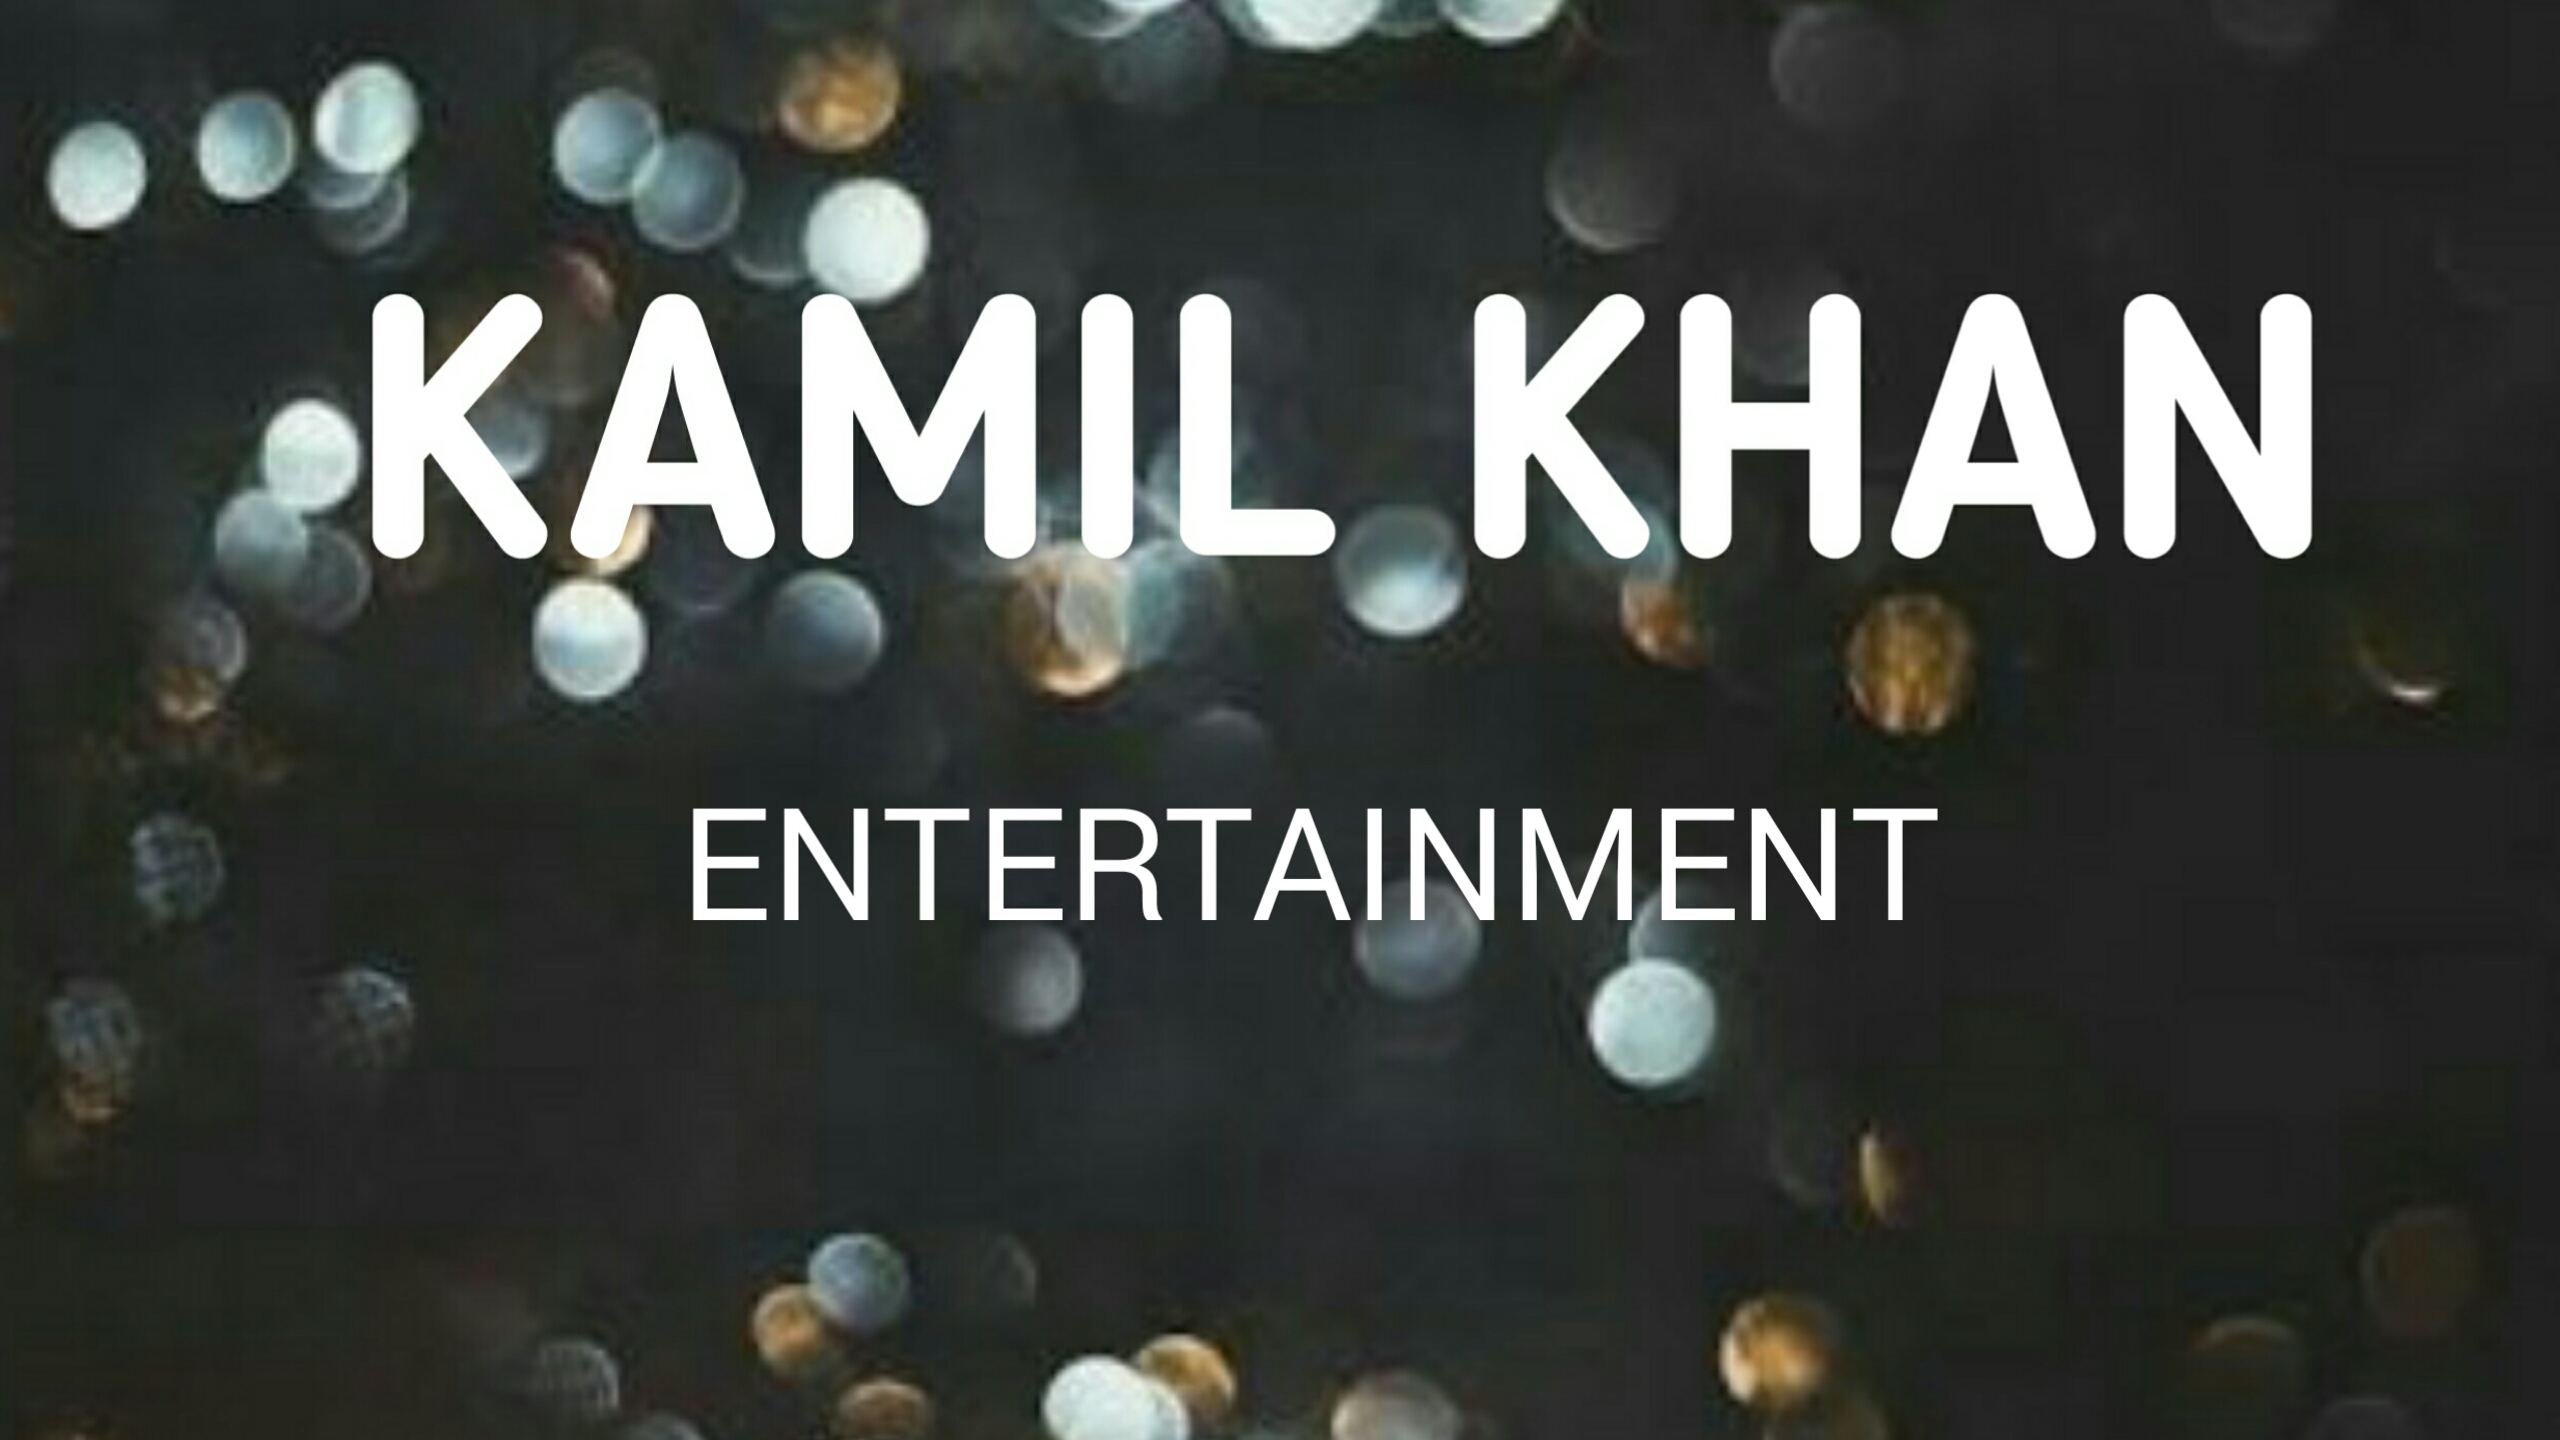 Kamil khan